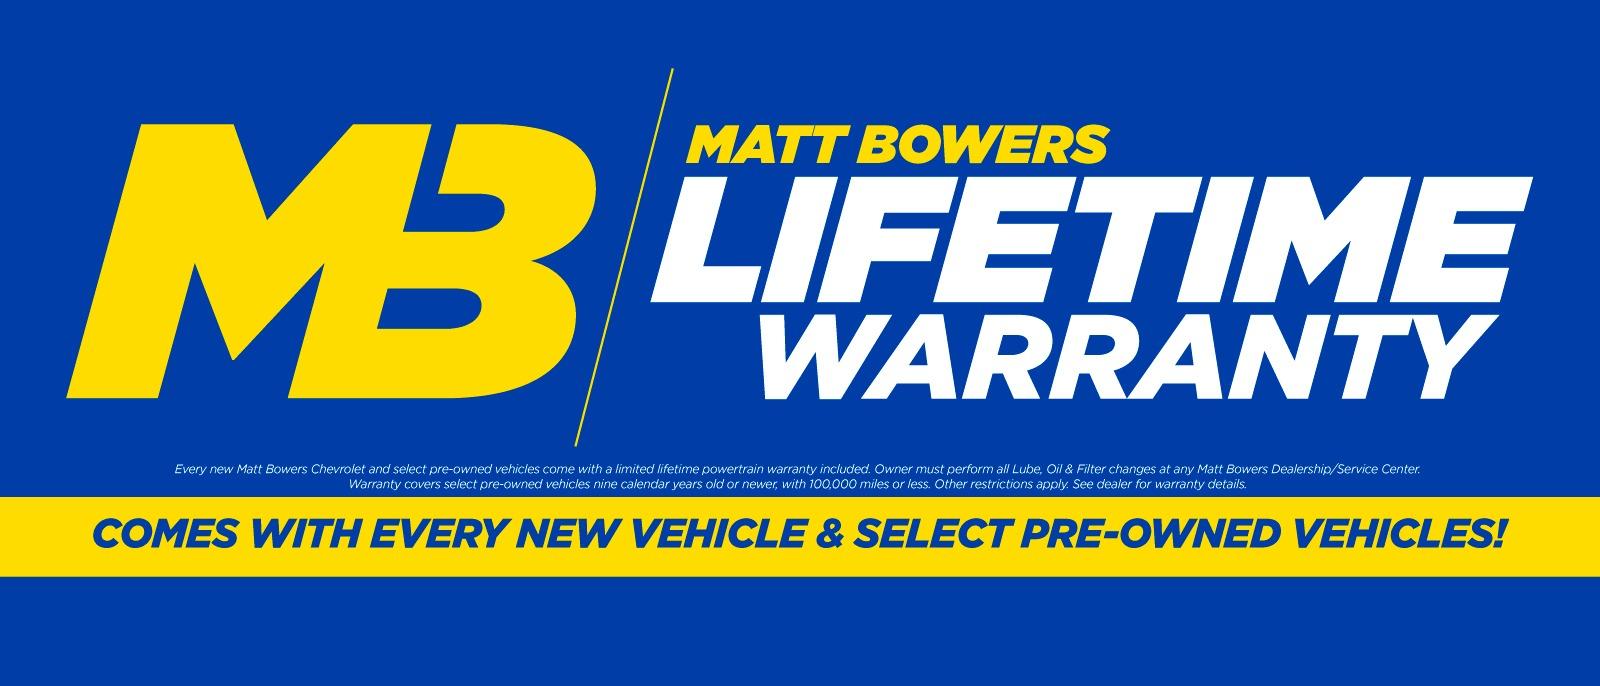 Matt Bowers Lifetime Warranty